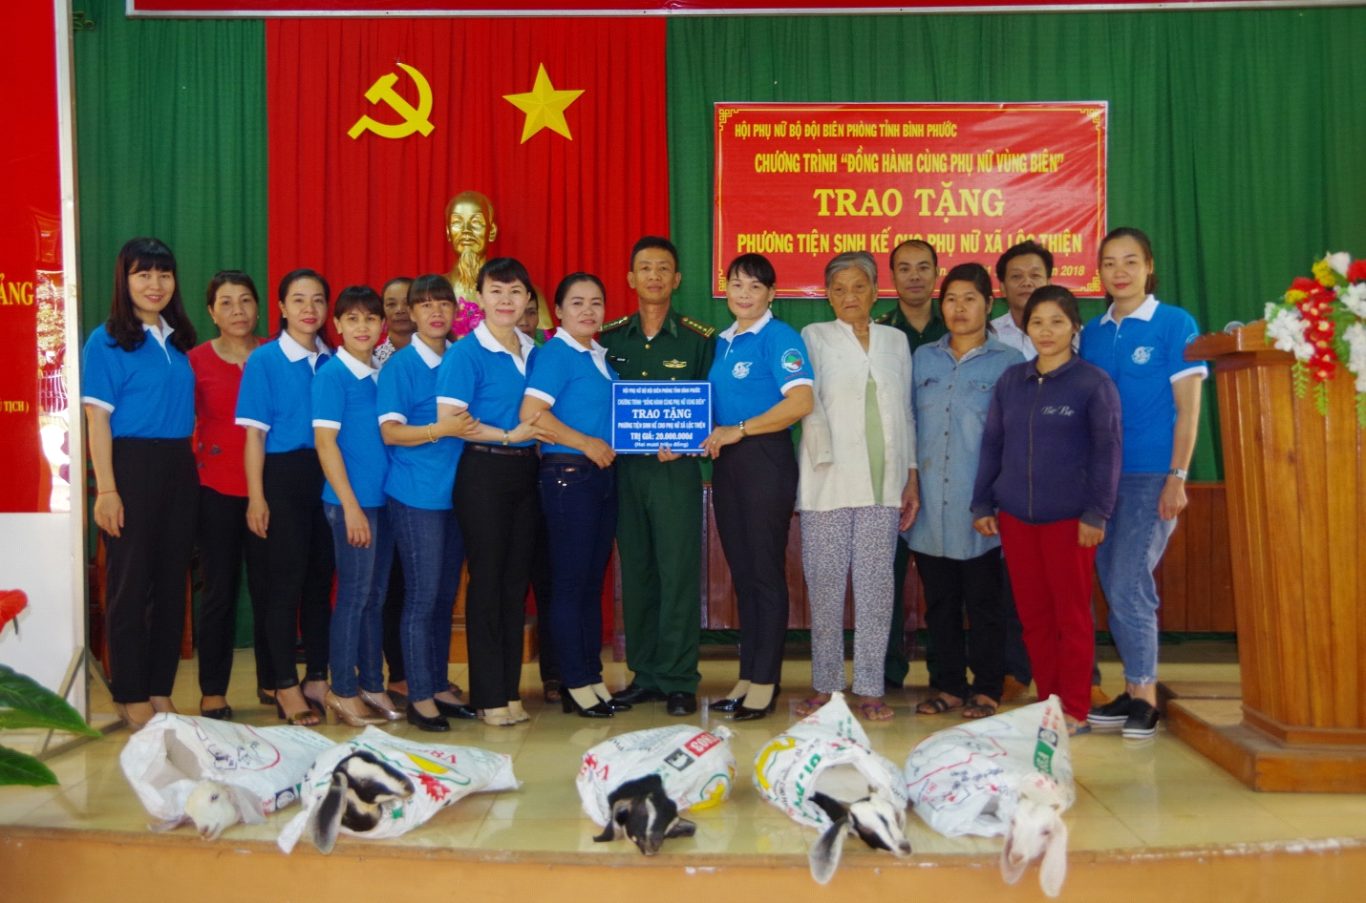 Hội Phụ nữ Bộ đội Biên phòng tỉnh Bình Phước trao phương tiện sinh kế cho phụ nữ nghèo vùng biên